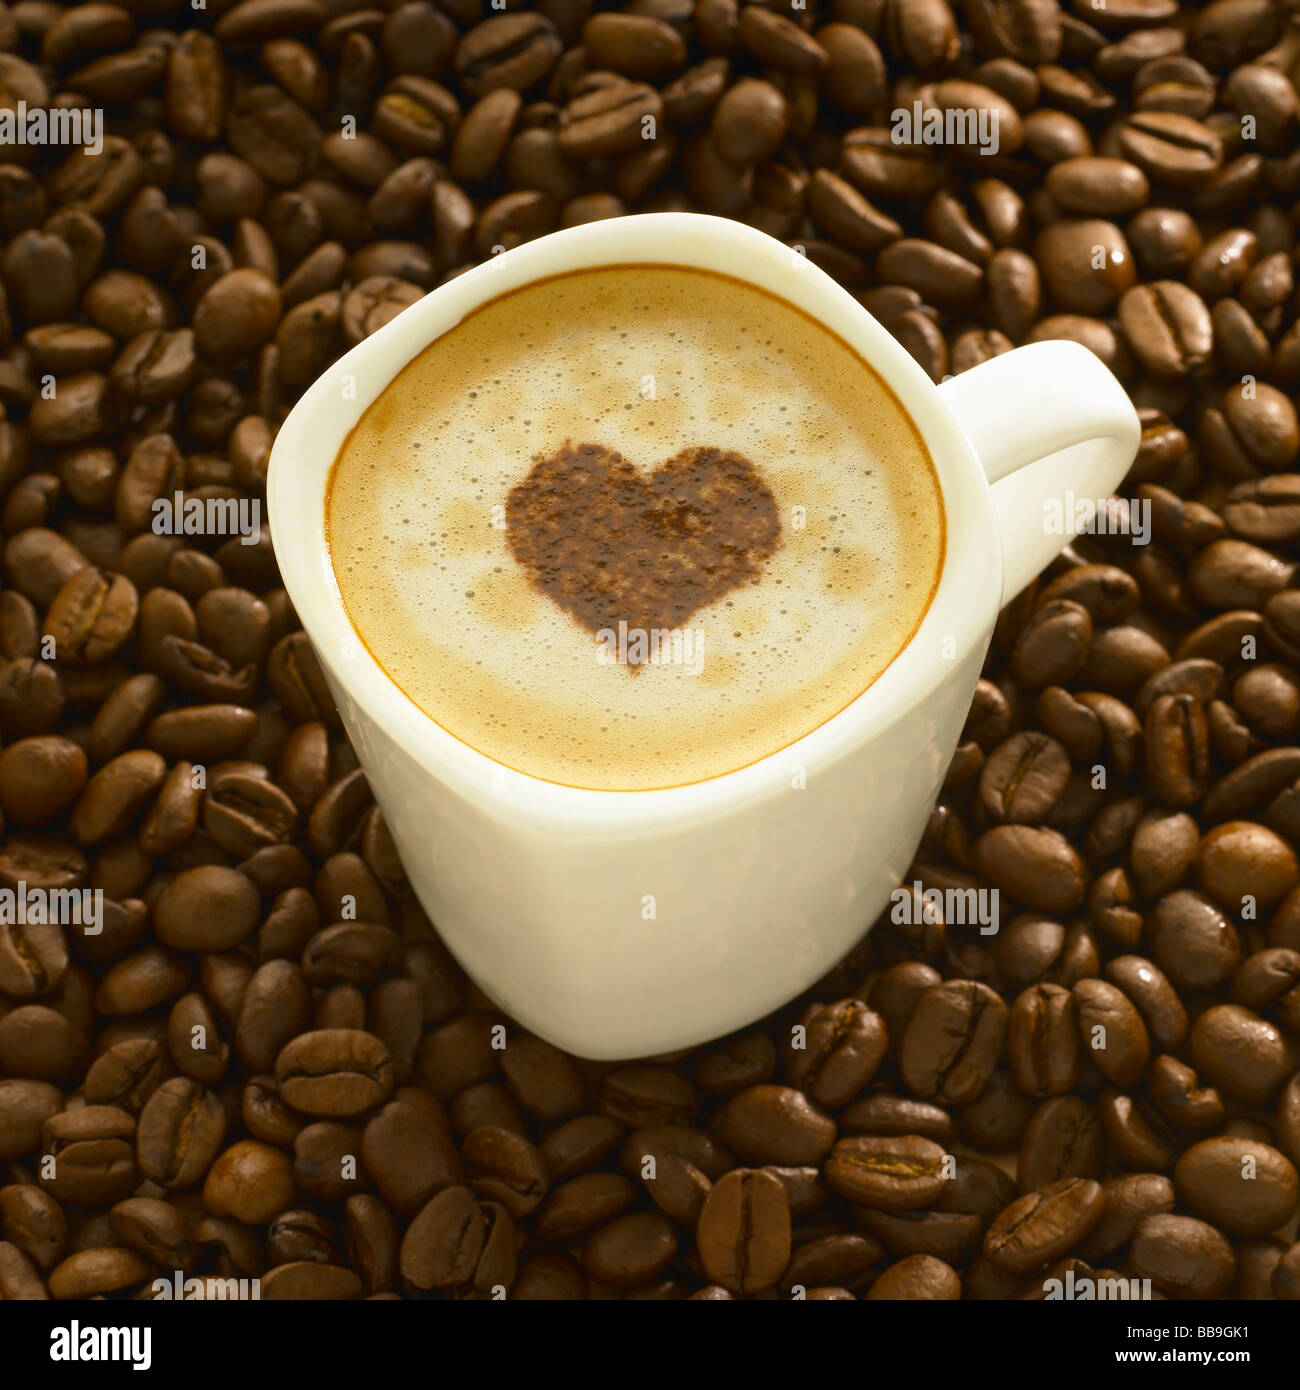 Une tasse de café cappuccino style avec une forme de coeur sur le dessus, tourné sur les grains de café. Banque D'Images